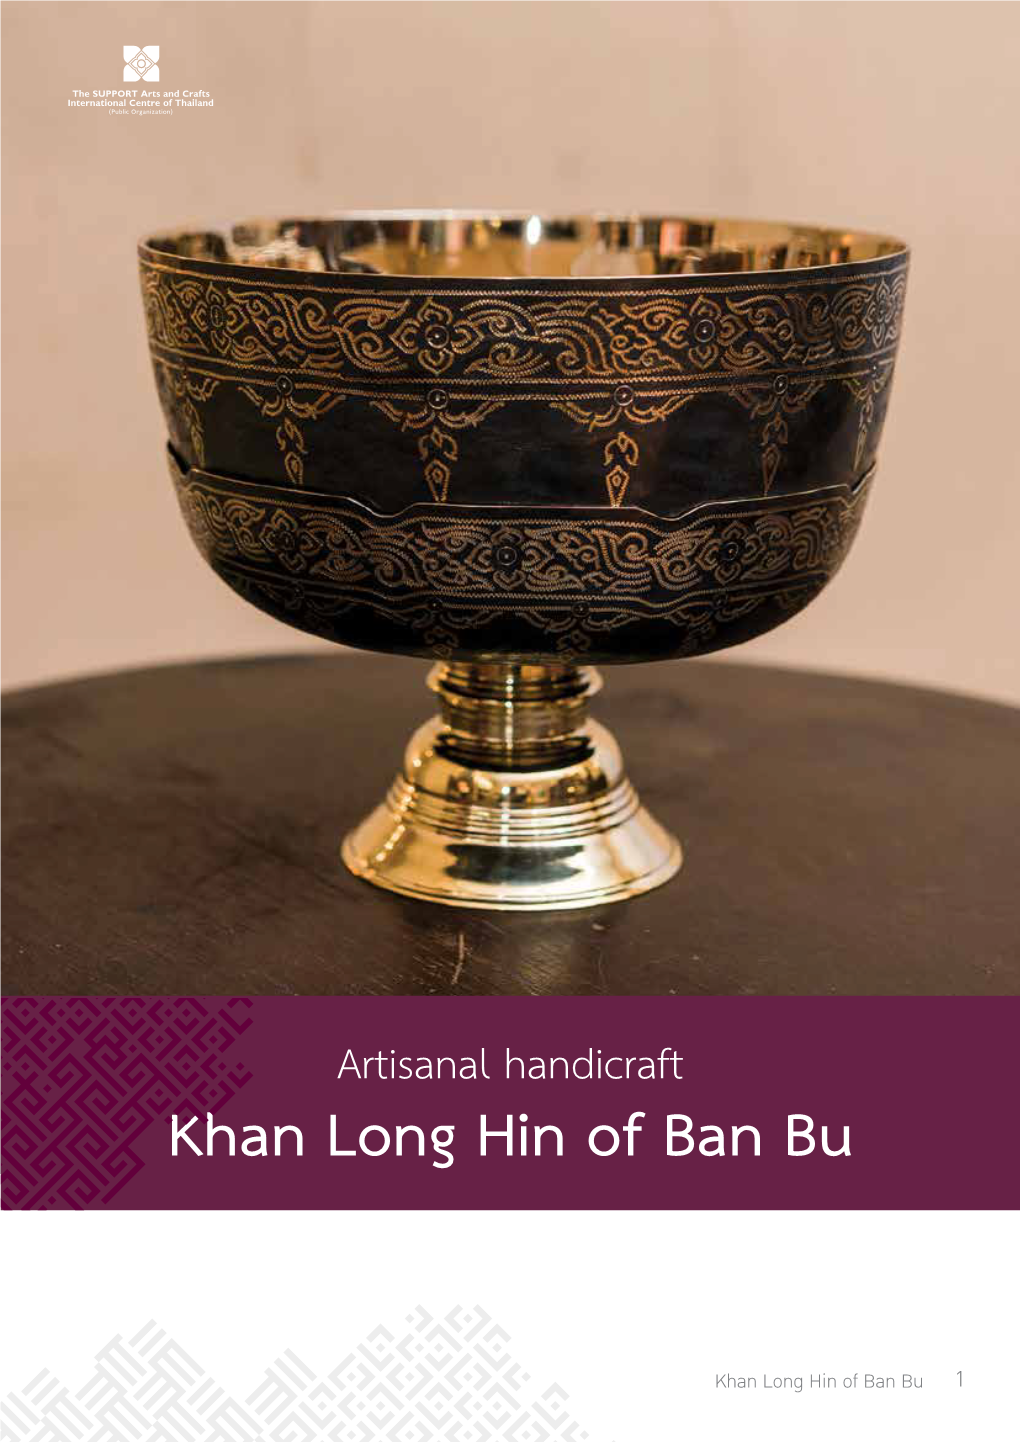 Khan Long Hin of Ban Bu